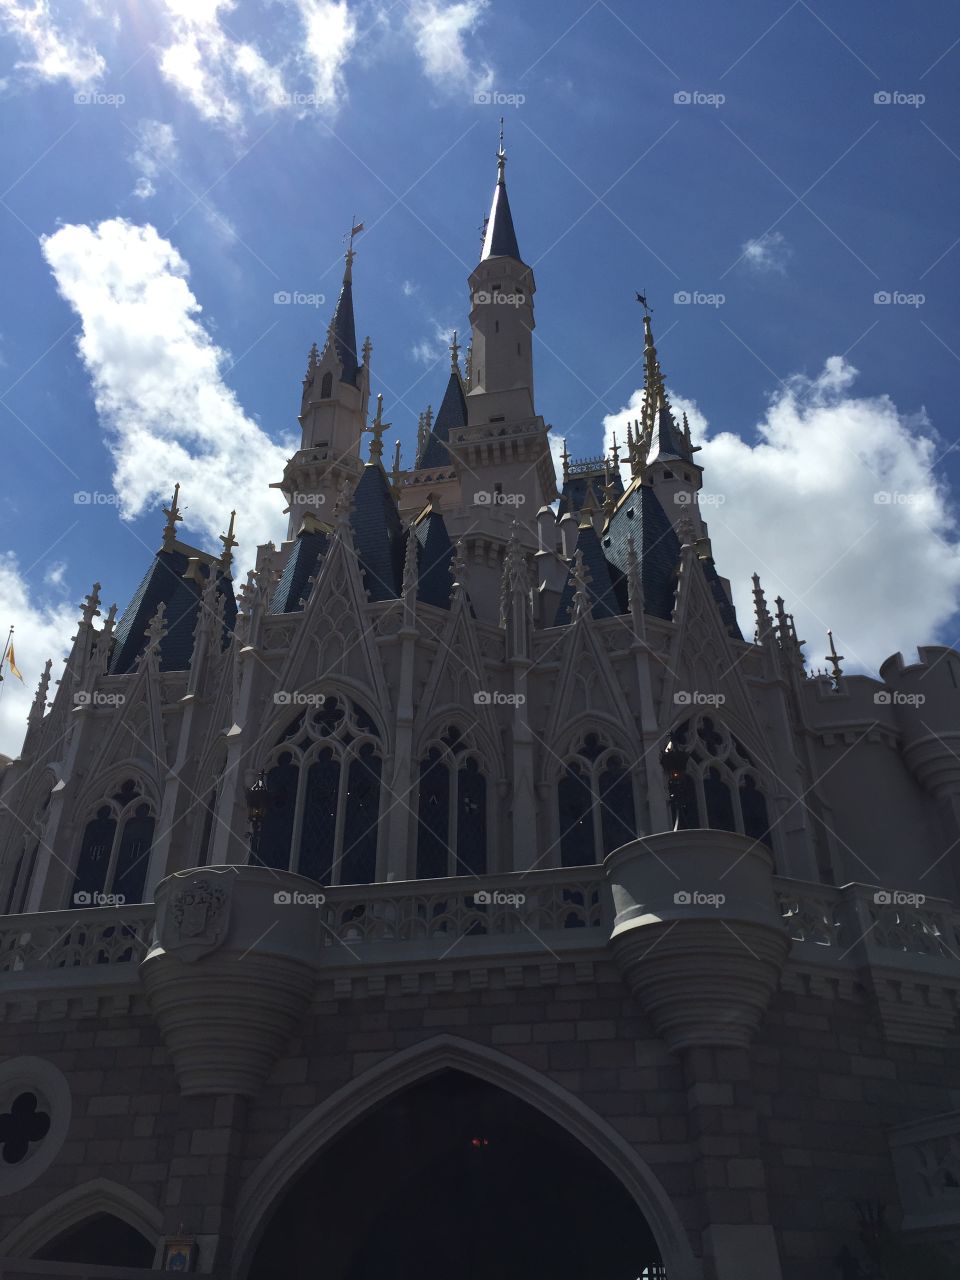 Cinderellas castle Disney